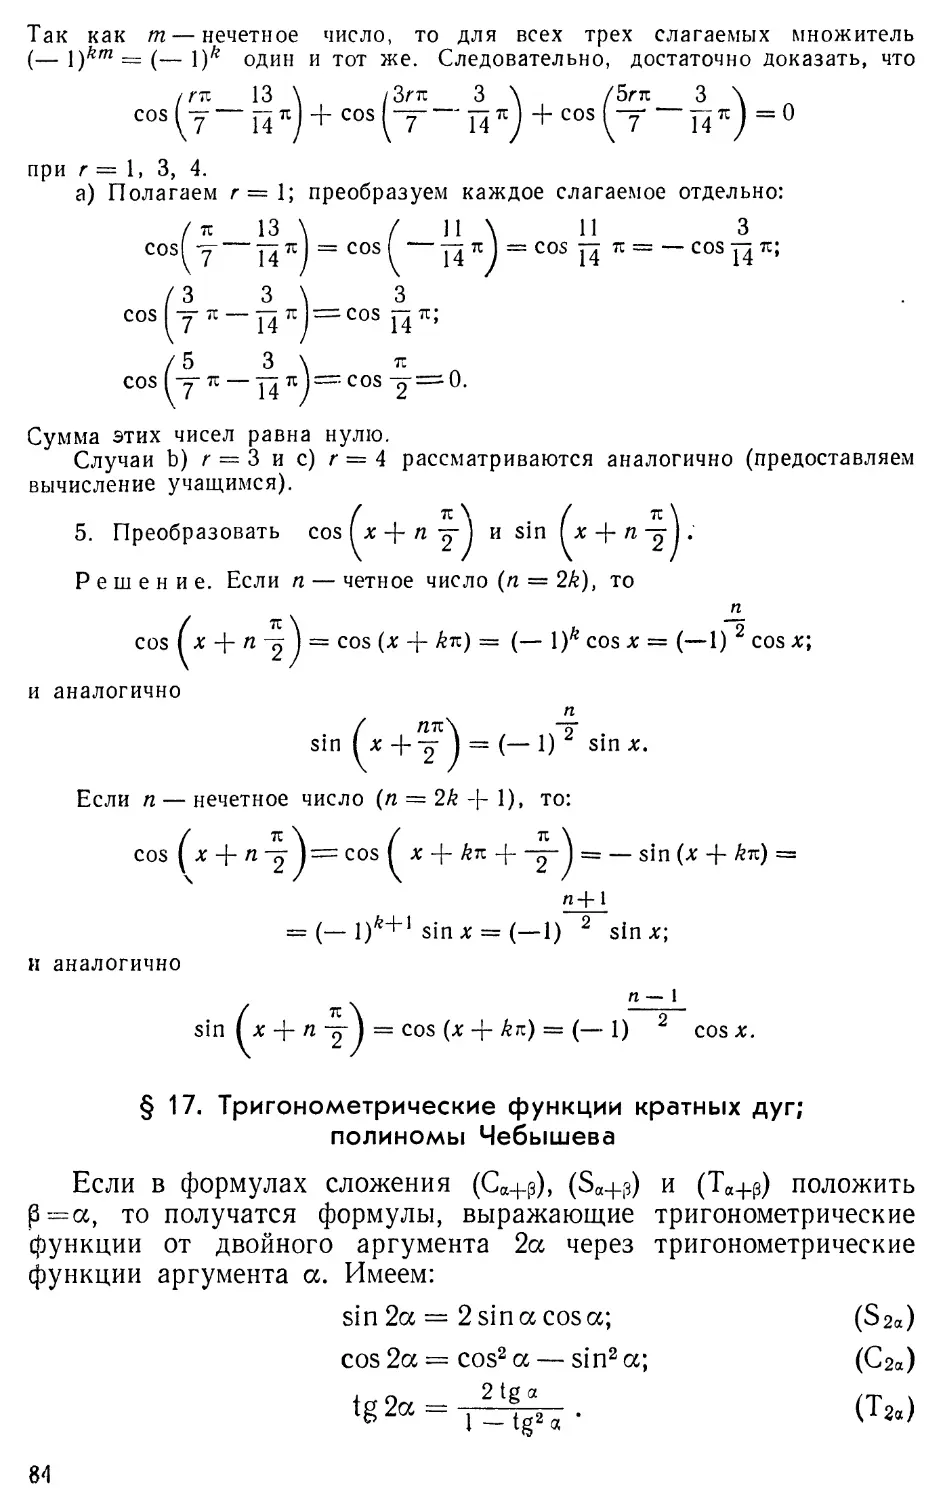 § 17. Тригонометрические функции кратных дуг; полином Чебышева